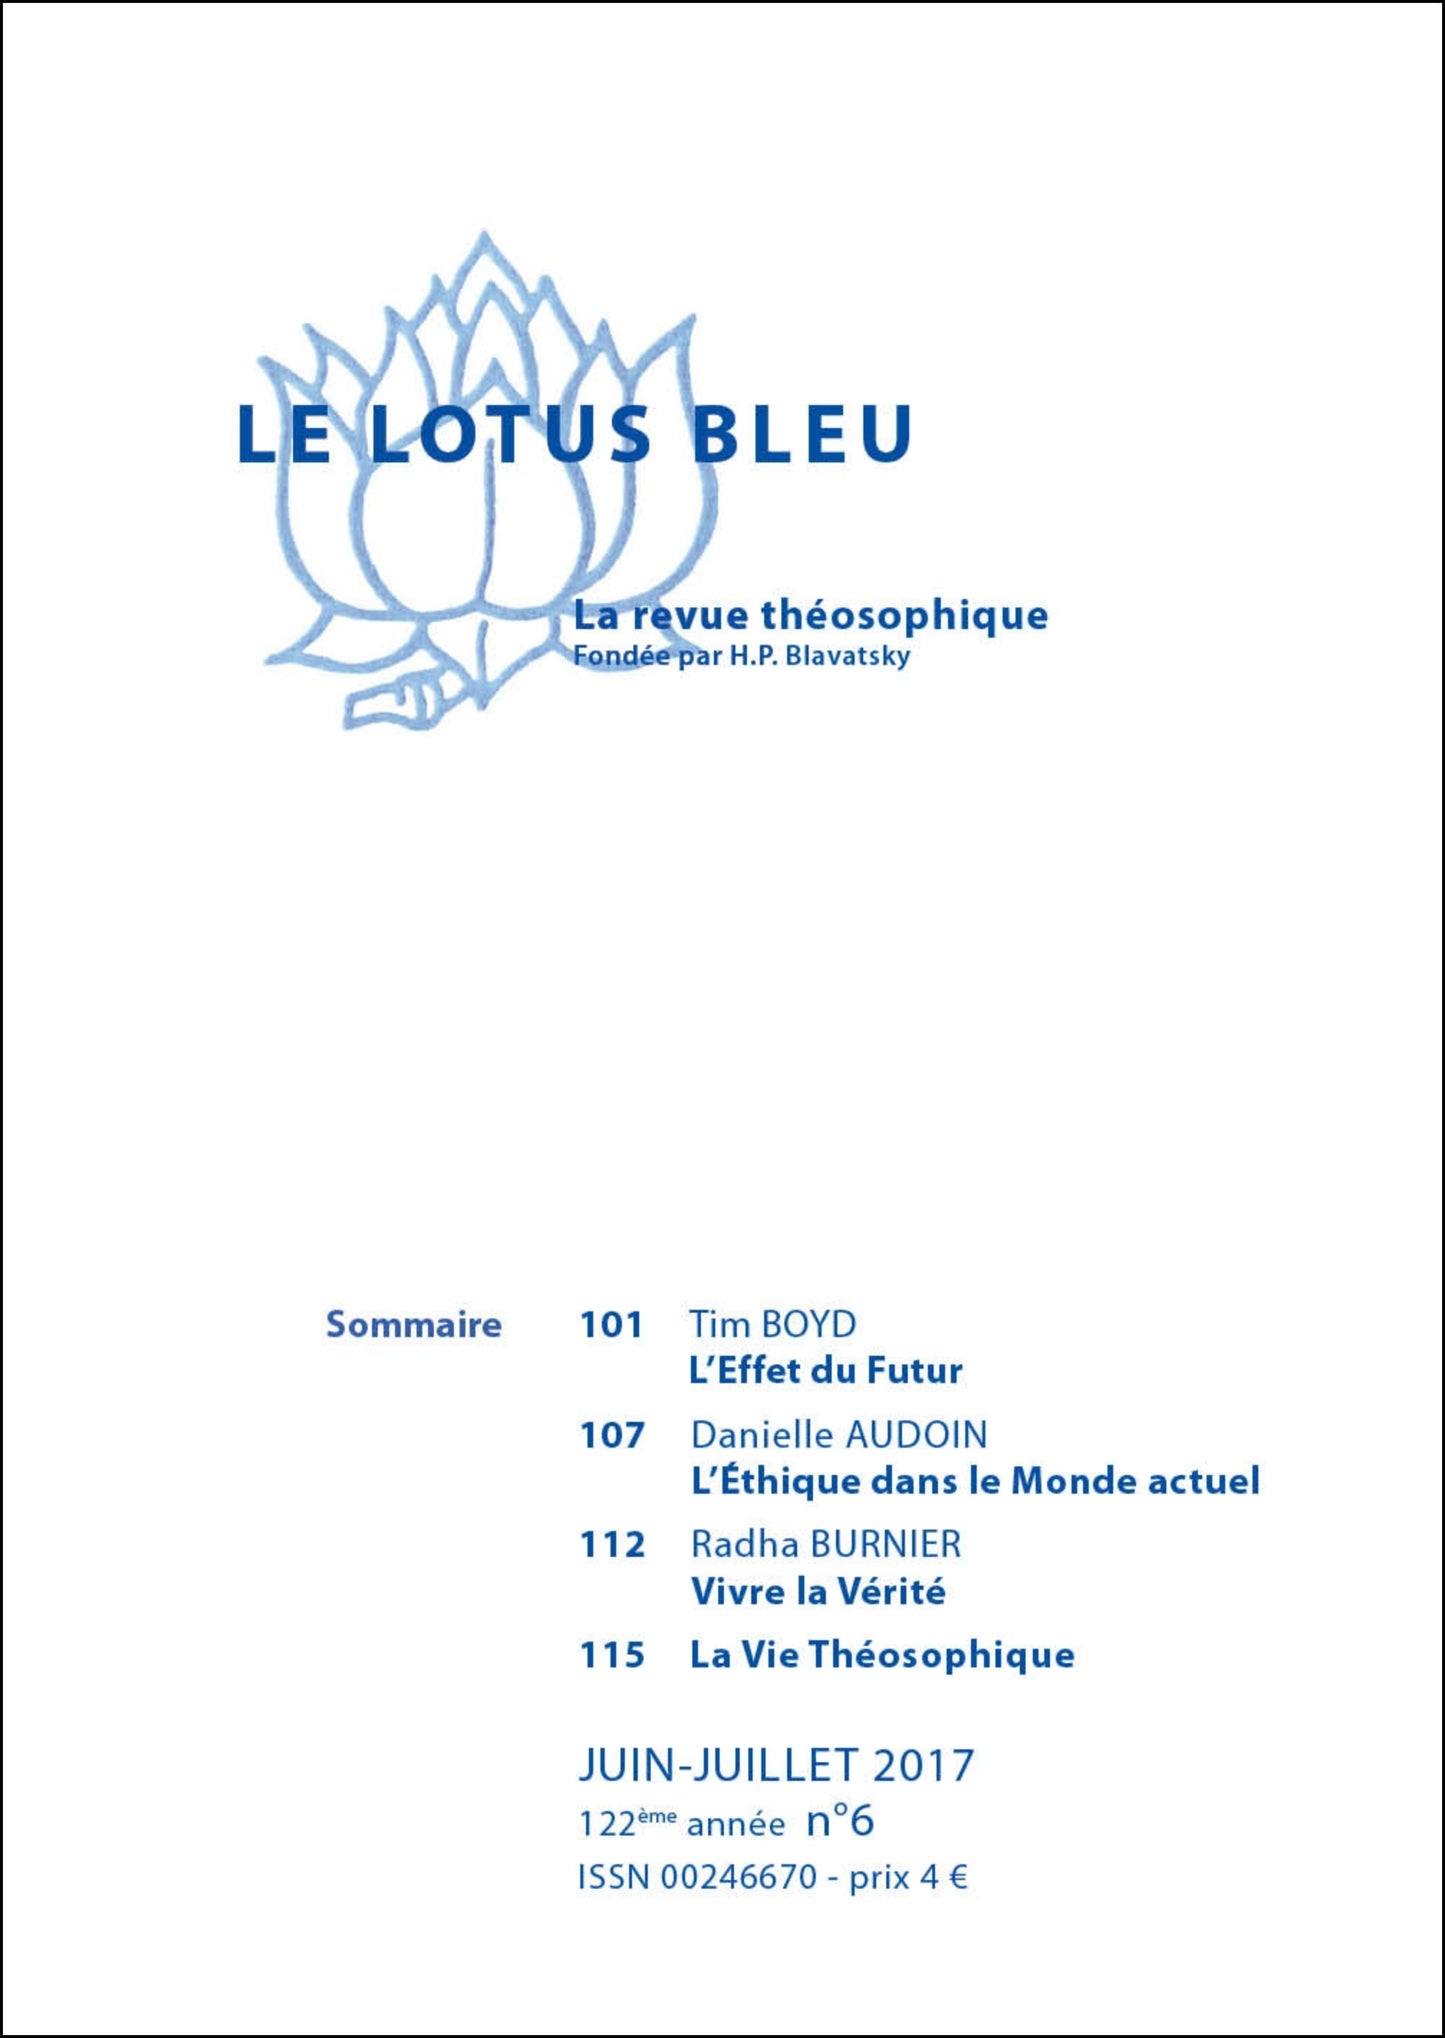 Le Lotus Bleu 2017/06